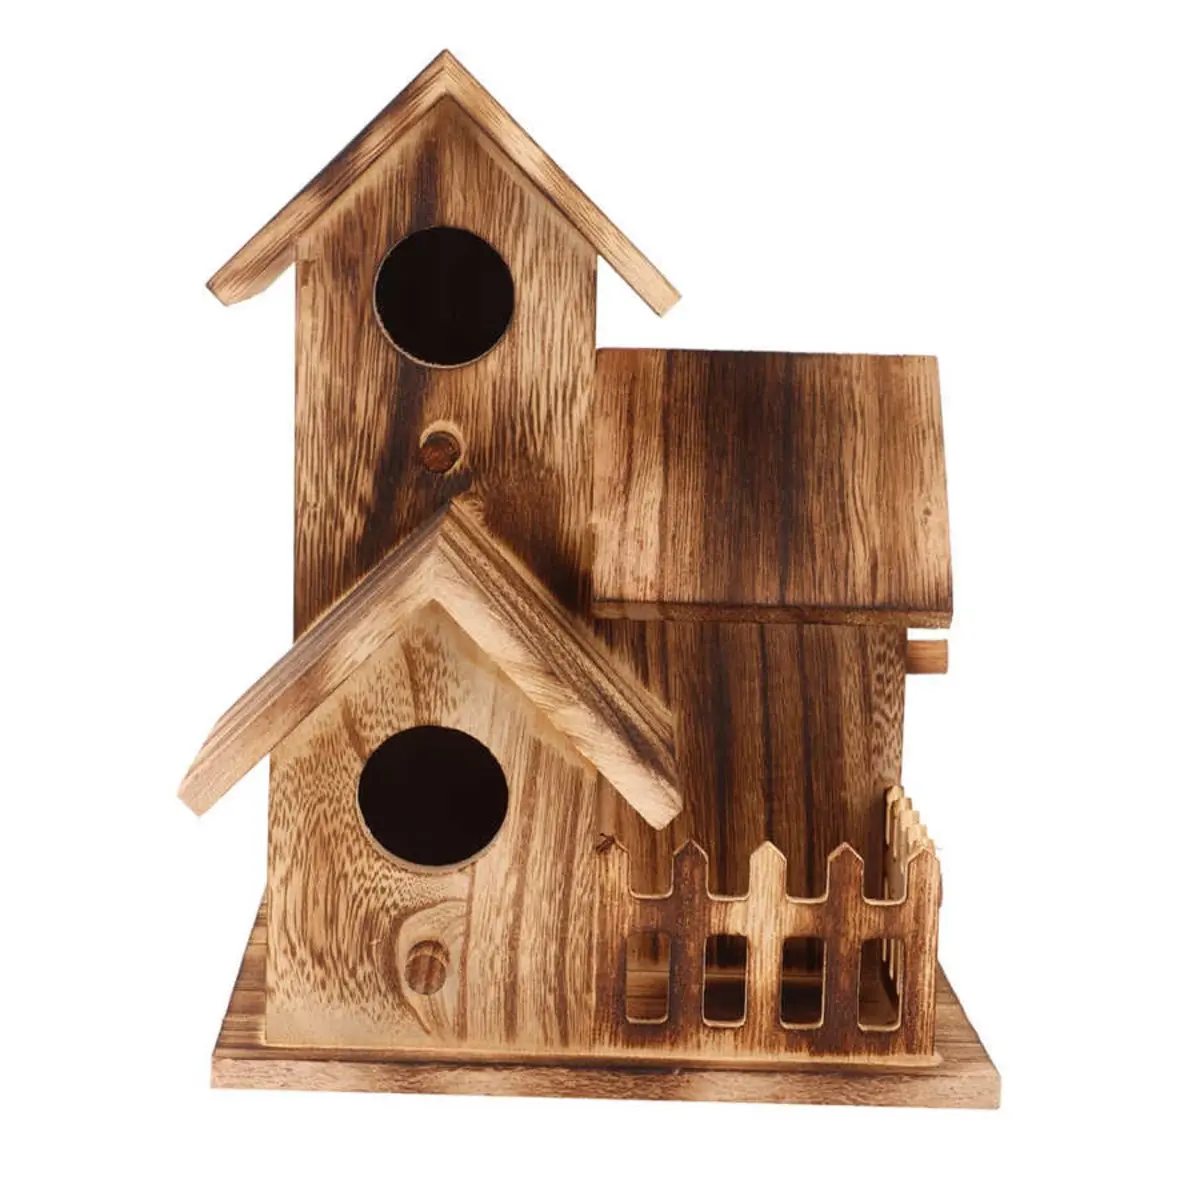 nichoir en bois pour les oiseaux comment les attirer dans son jardin